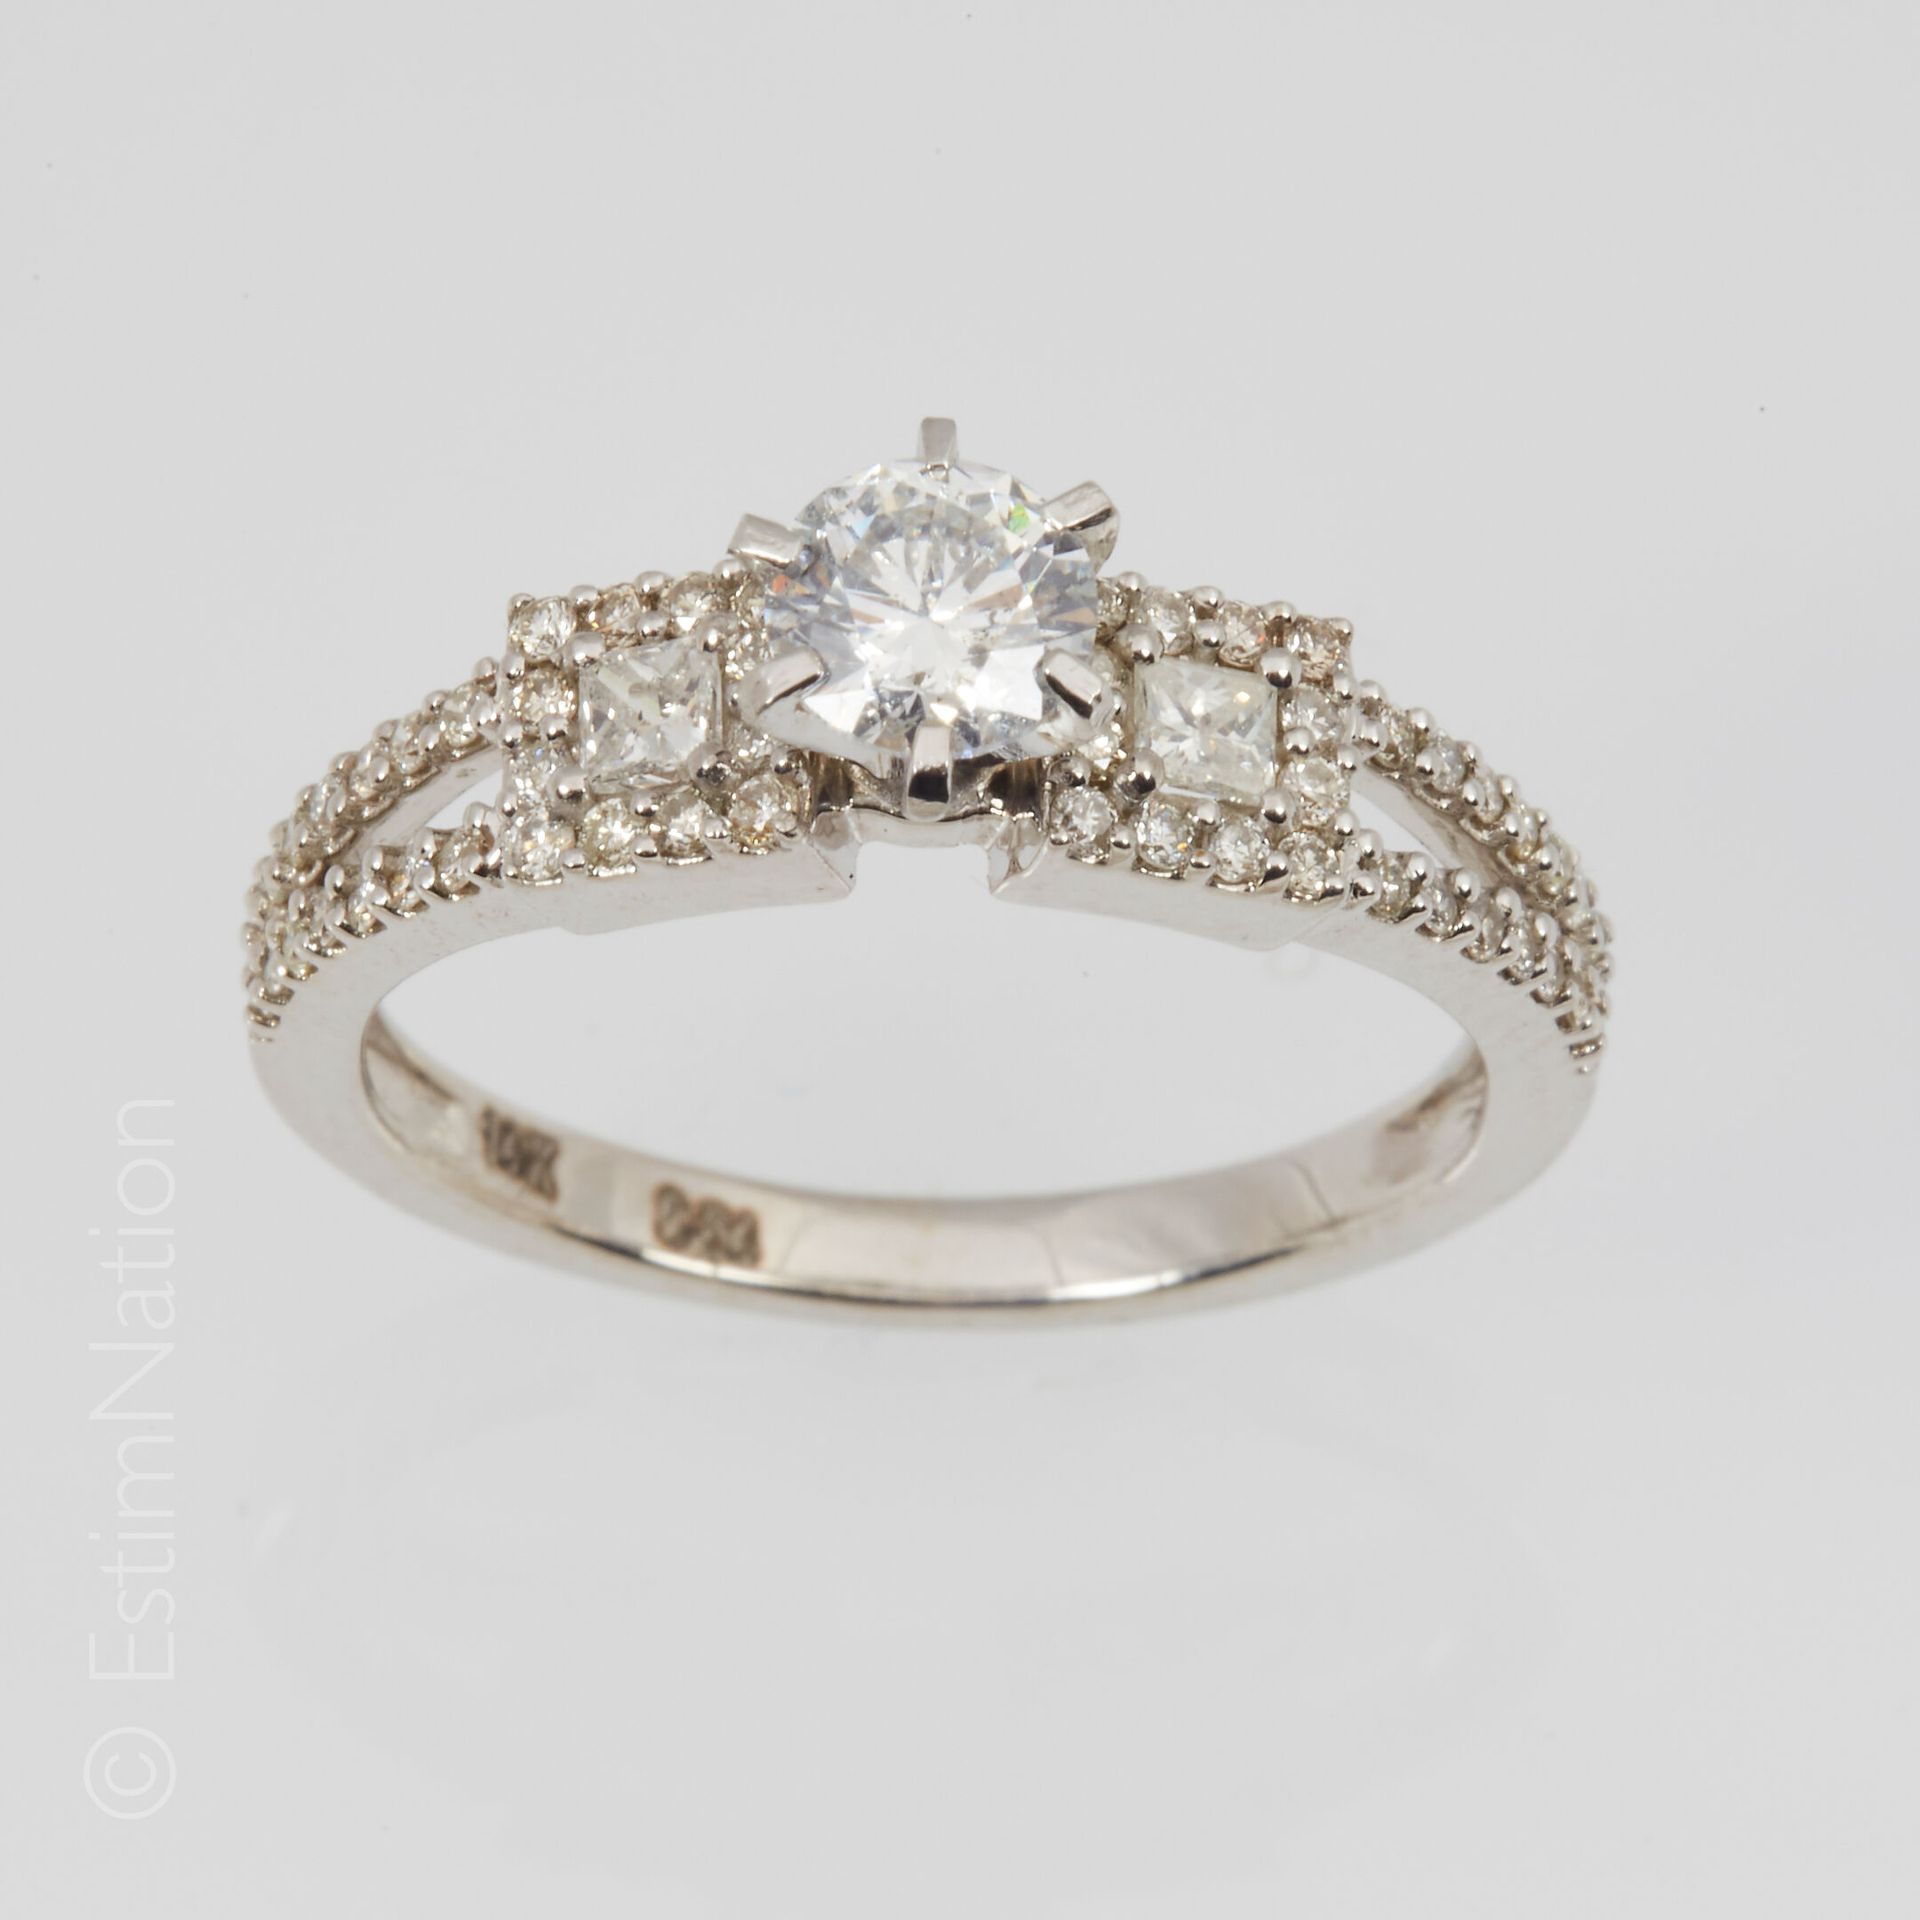 BAGUE DIAMANT 14K（585千分之一）白金戒指，镂空，镶有一颗0.50克拉的现代切割钻石，周围有两颗公主钻石和更小的钻石。手指大小：54.5。毛重&hellip;